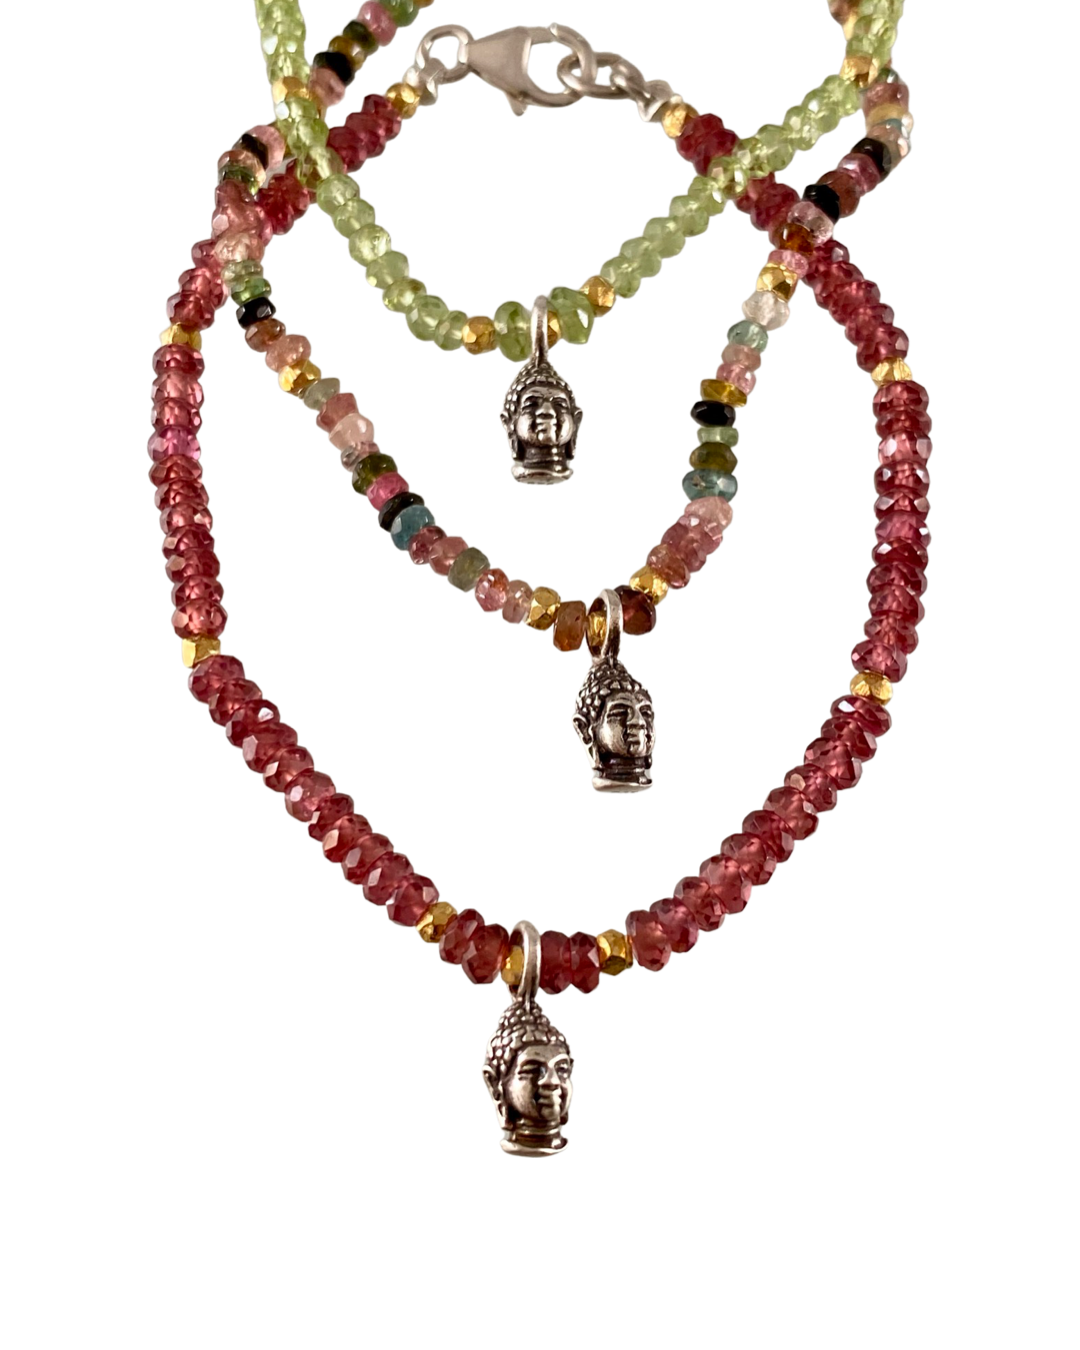 Faceted Gemstone & Buddha Charm Bracelet